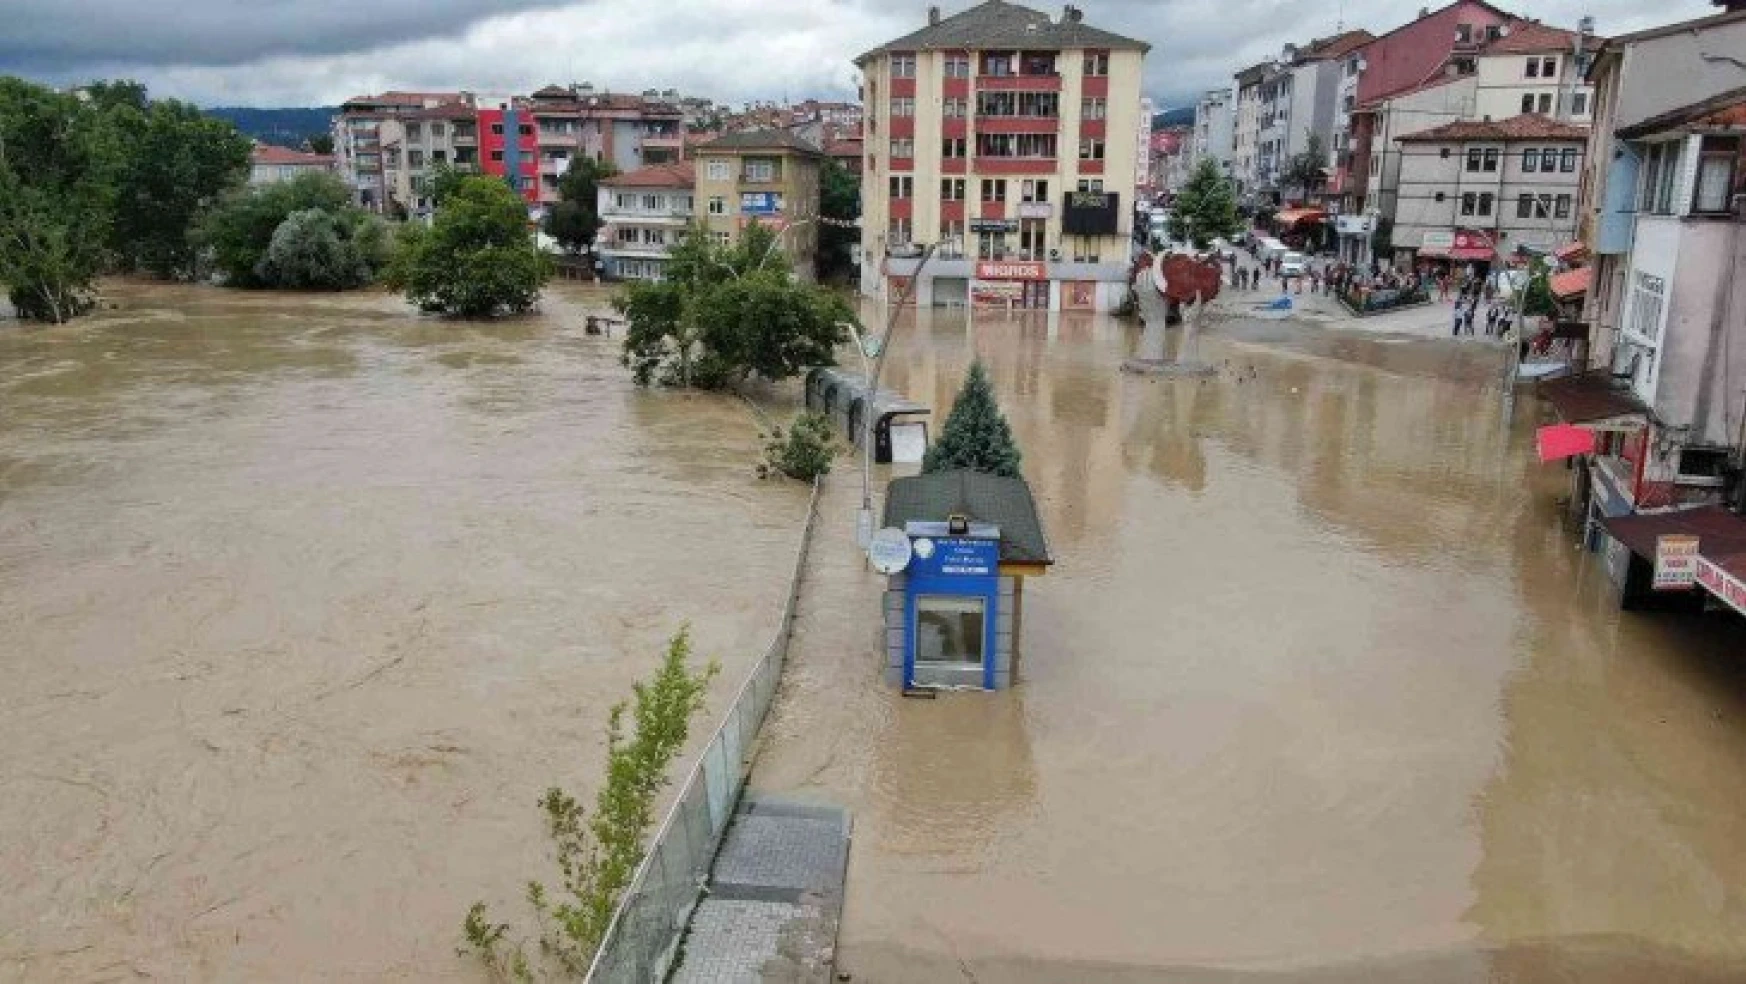 Bartın'da sel suları çekilmeye başladı, kent dron ile havadan görüntülendi